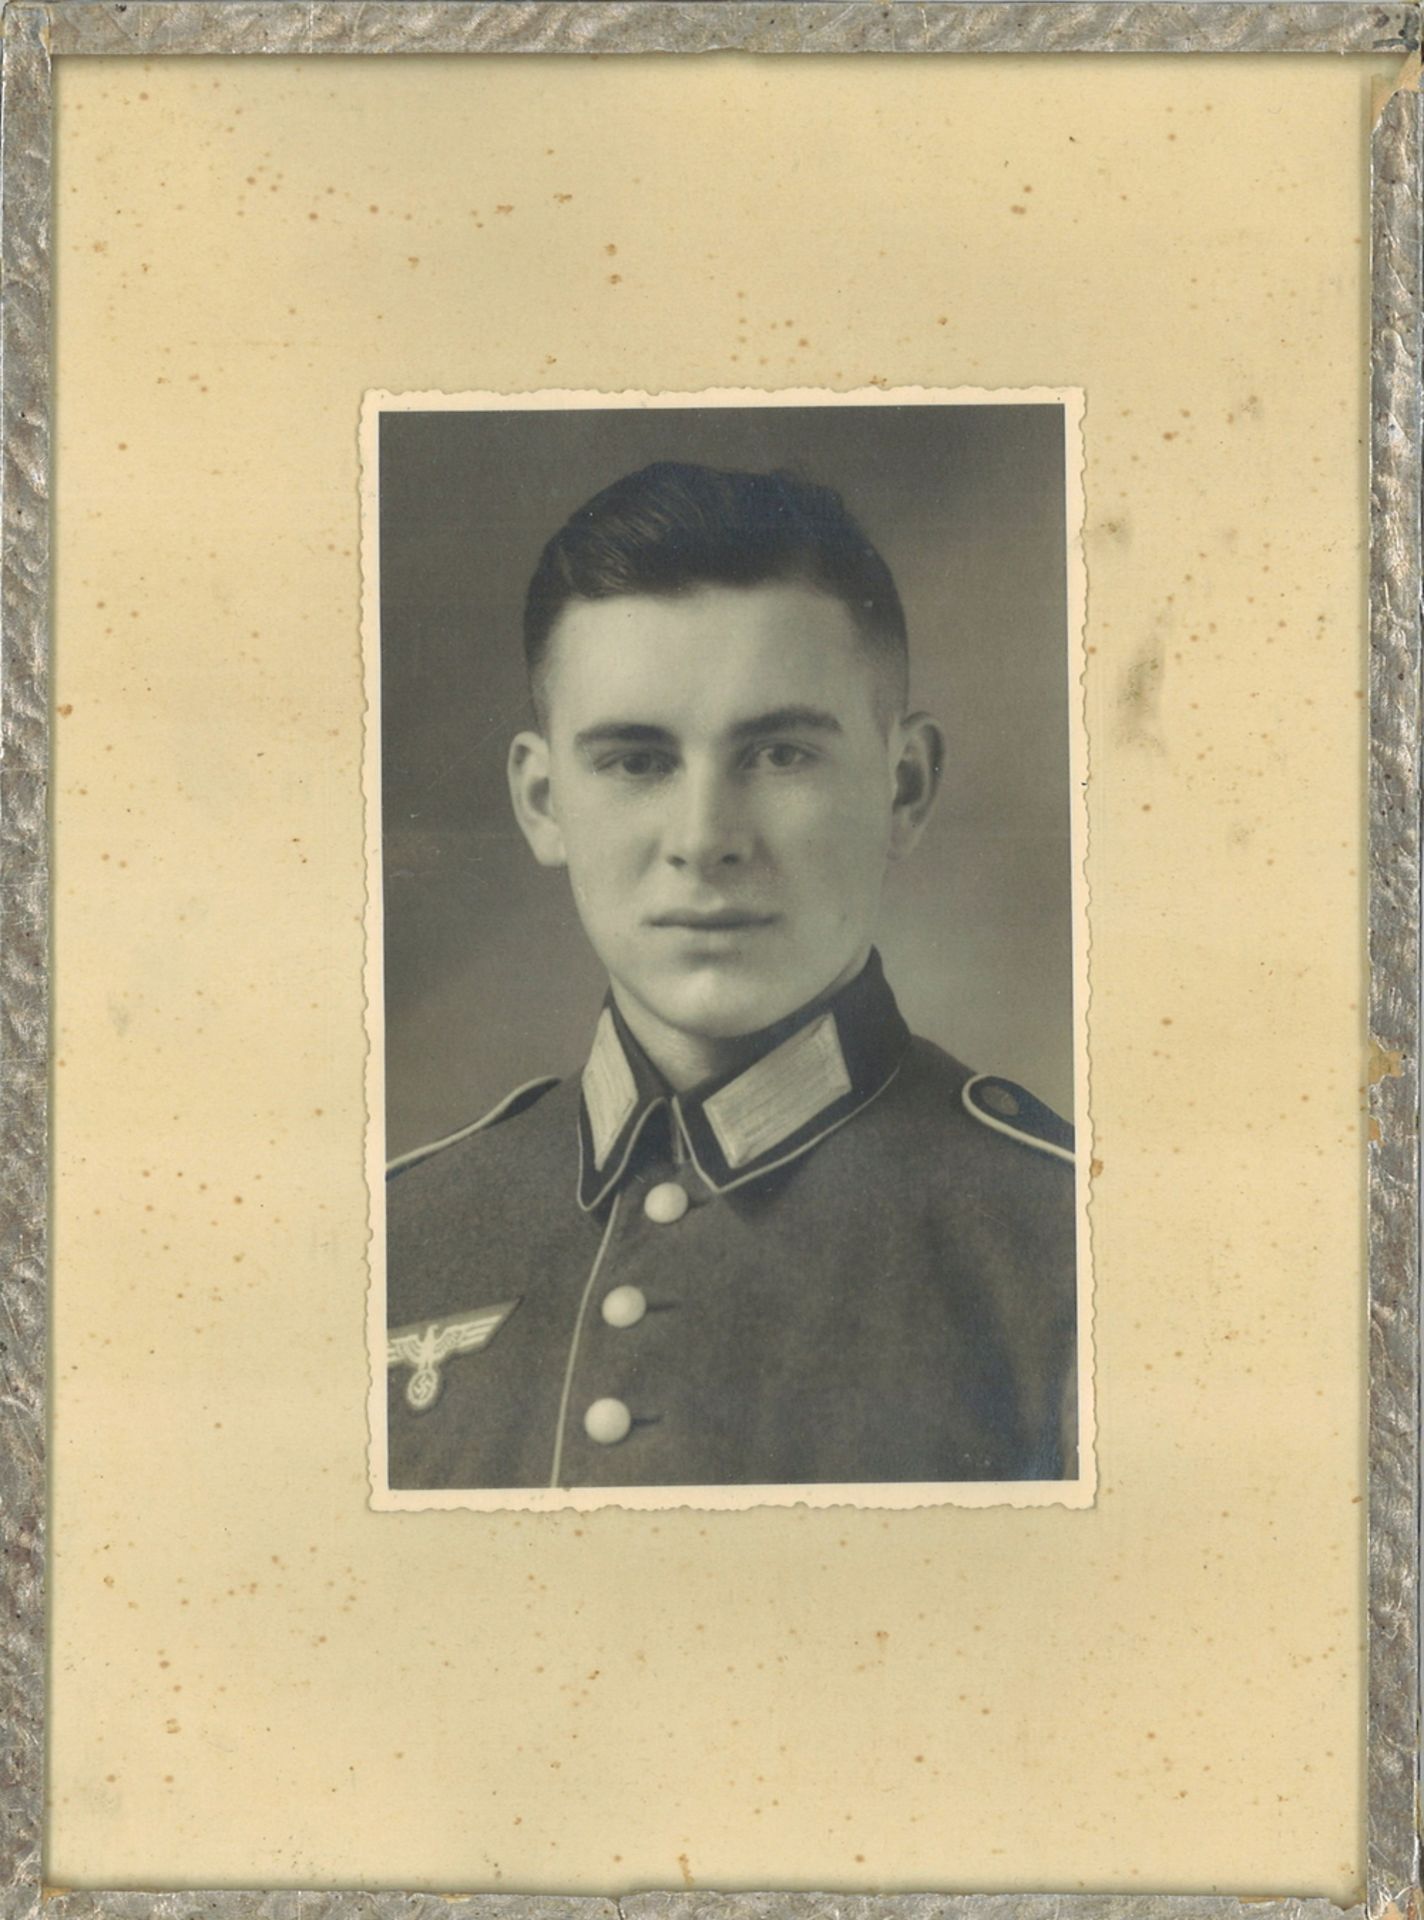 Foto eines Soldaten, Drittes Reich. Hinter Glas gerahmt. Gesamtmaße: Höhe ca. 23,5 cm, Breite ca. 17